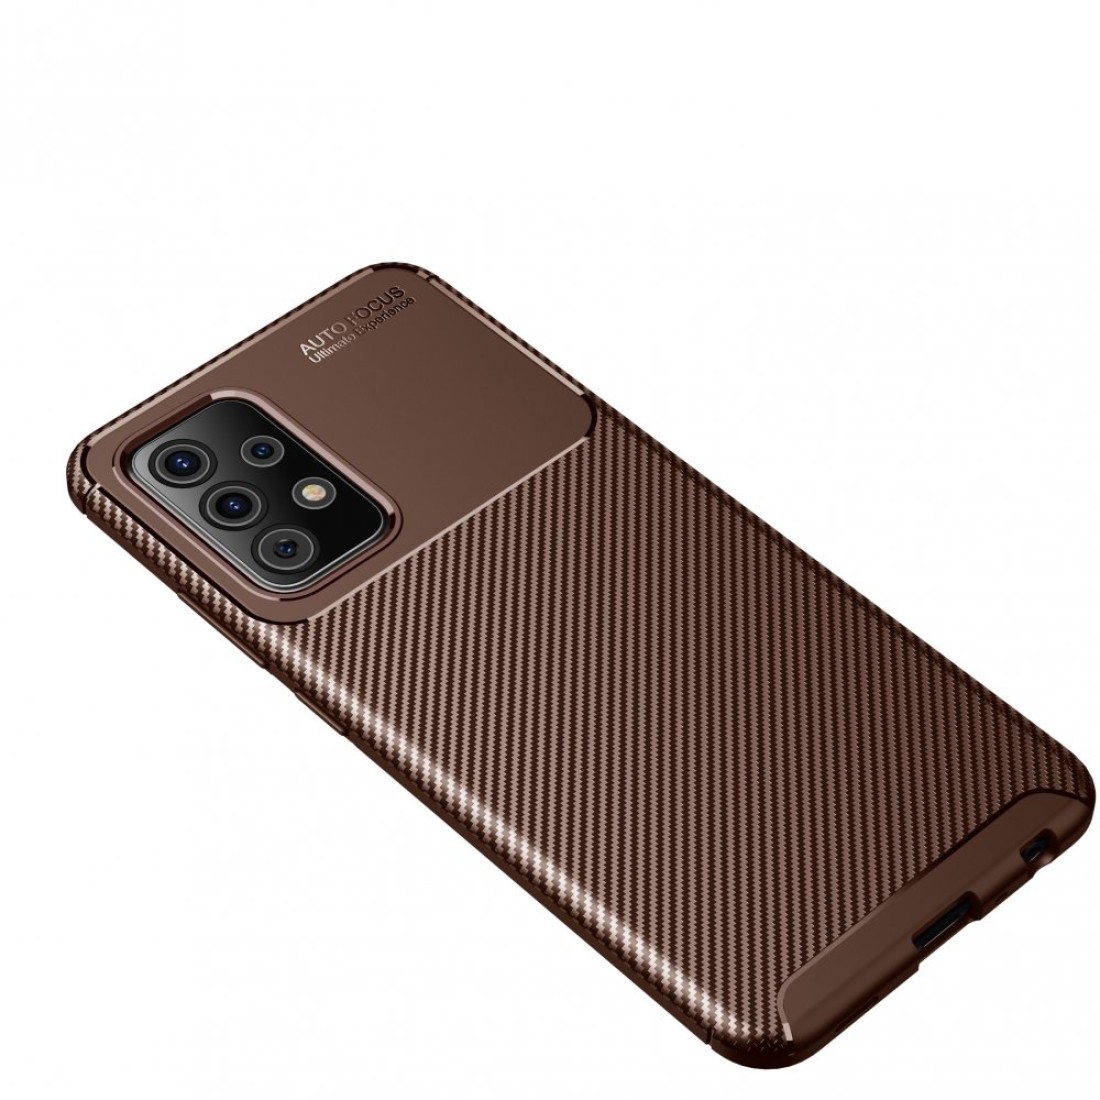 Samsung Galaxy A52 Kılıf Focus Karbon Silikon - Kahverengi